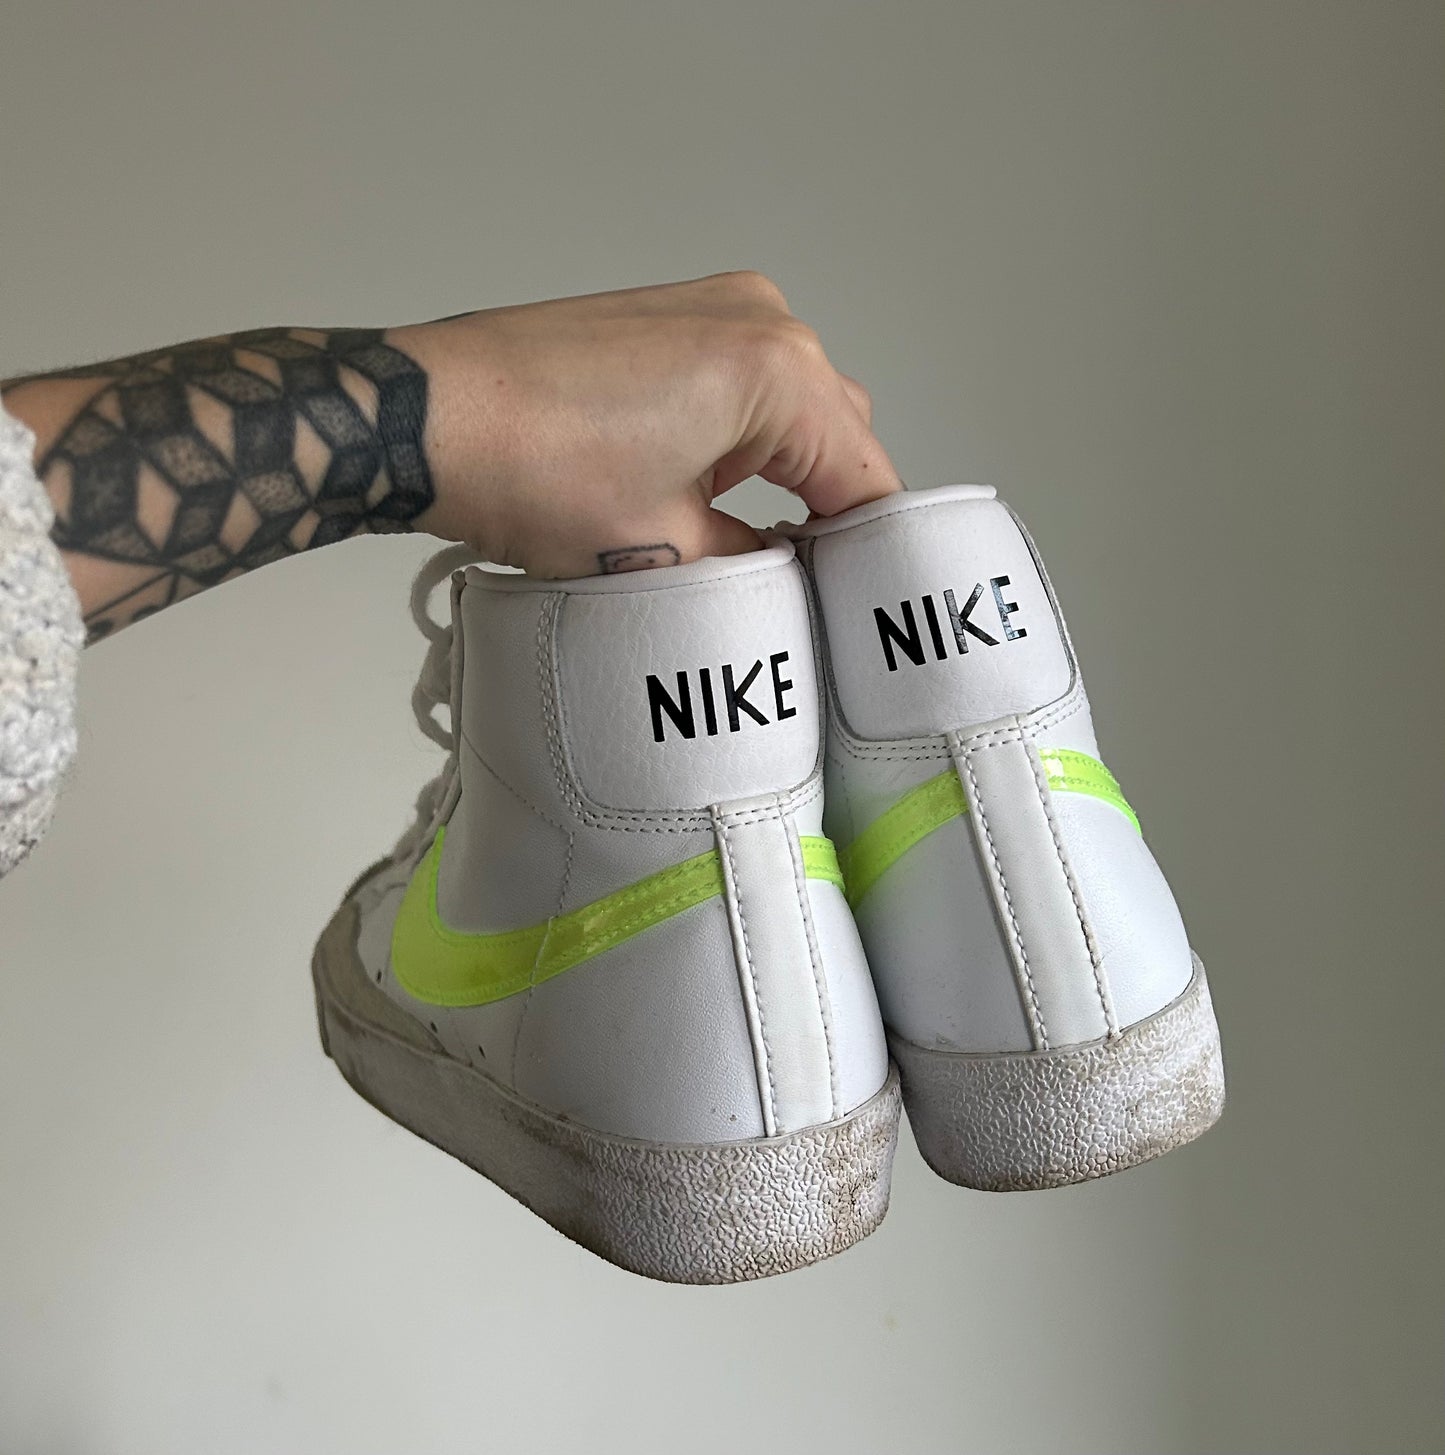 Nike blazers size 3.5